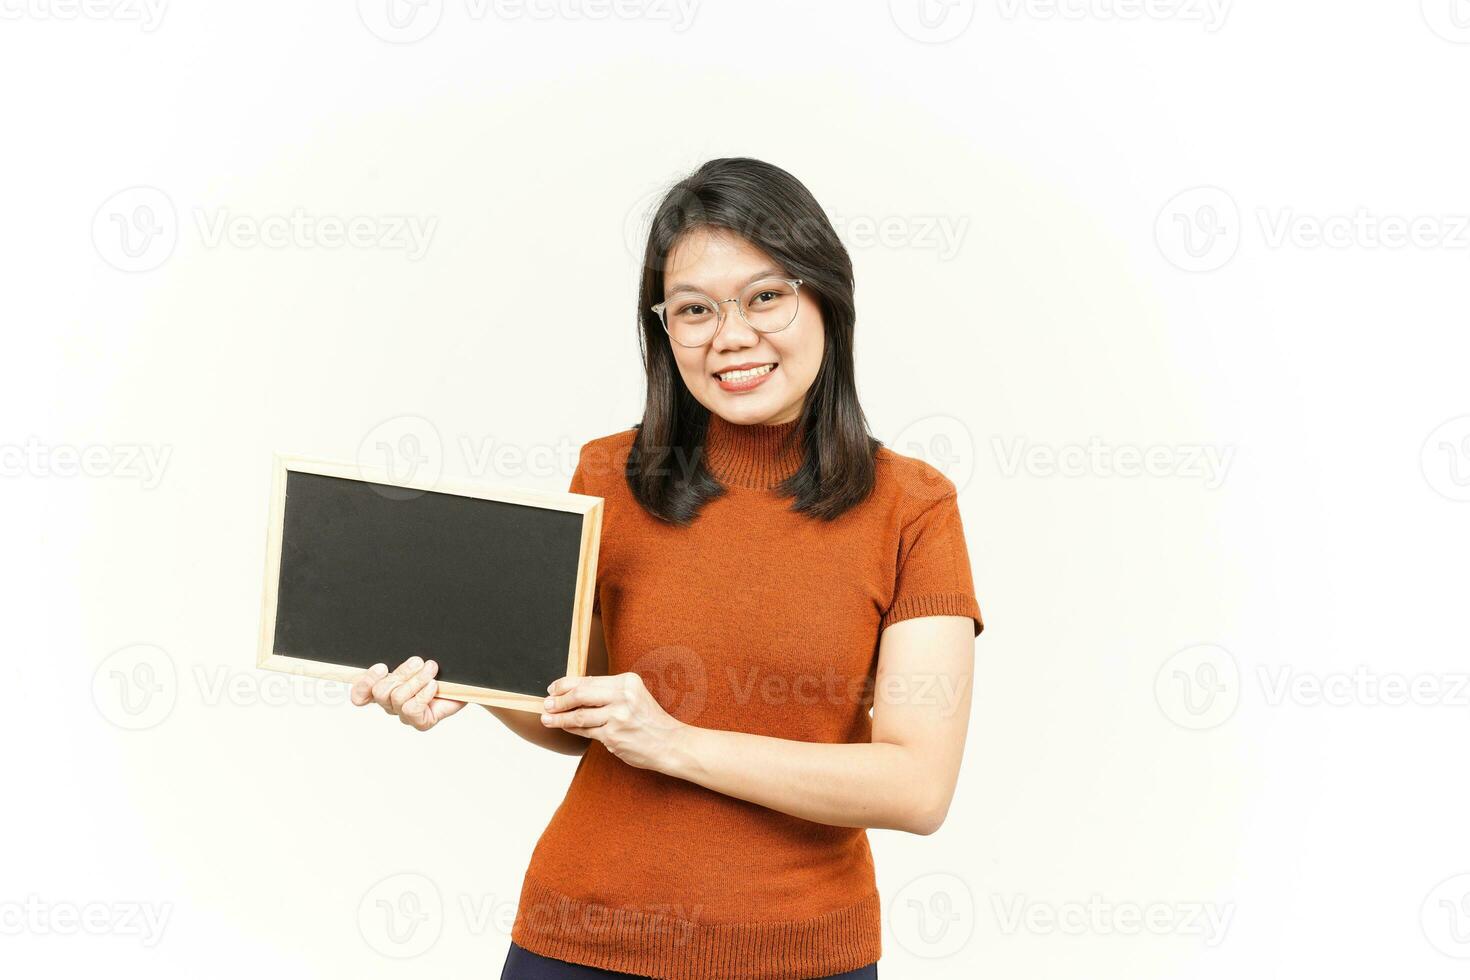 mostrando, apresentando e segurando o quadro-negro em branco da bela mulher asiática isolada no branco foto